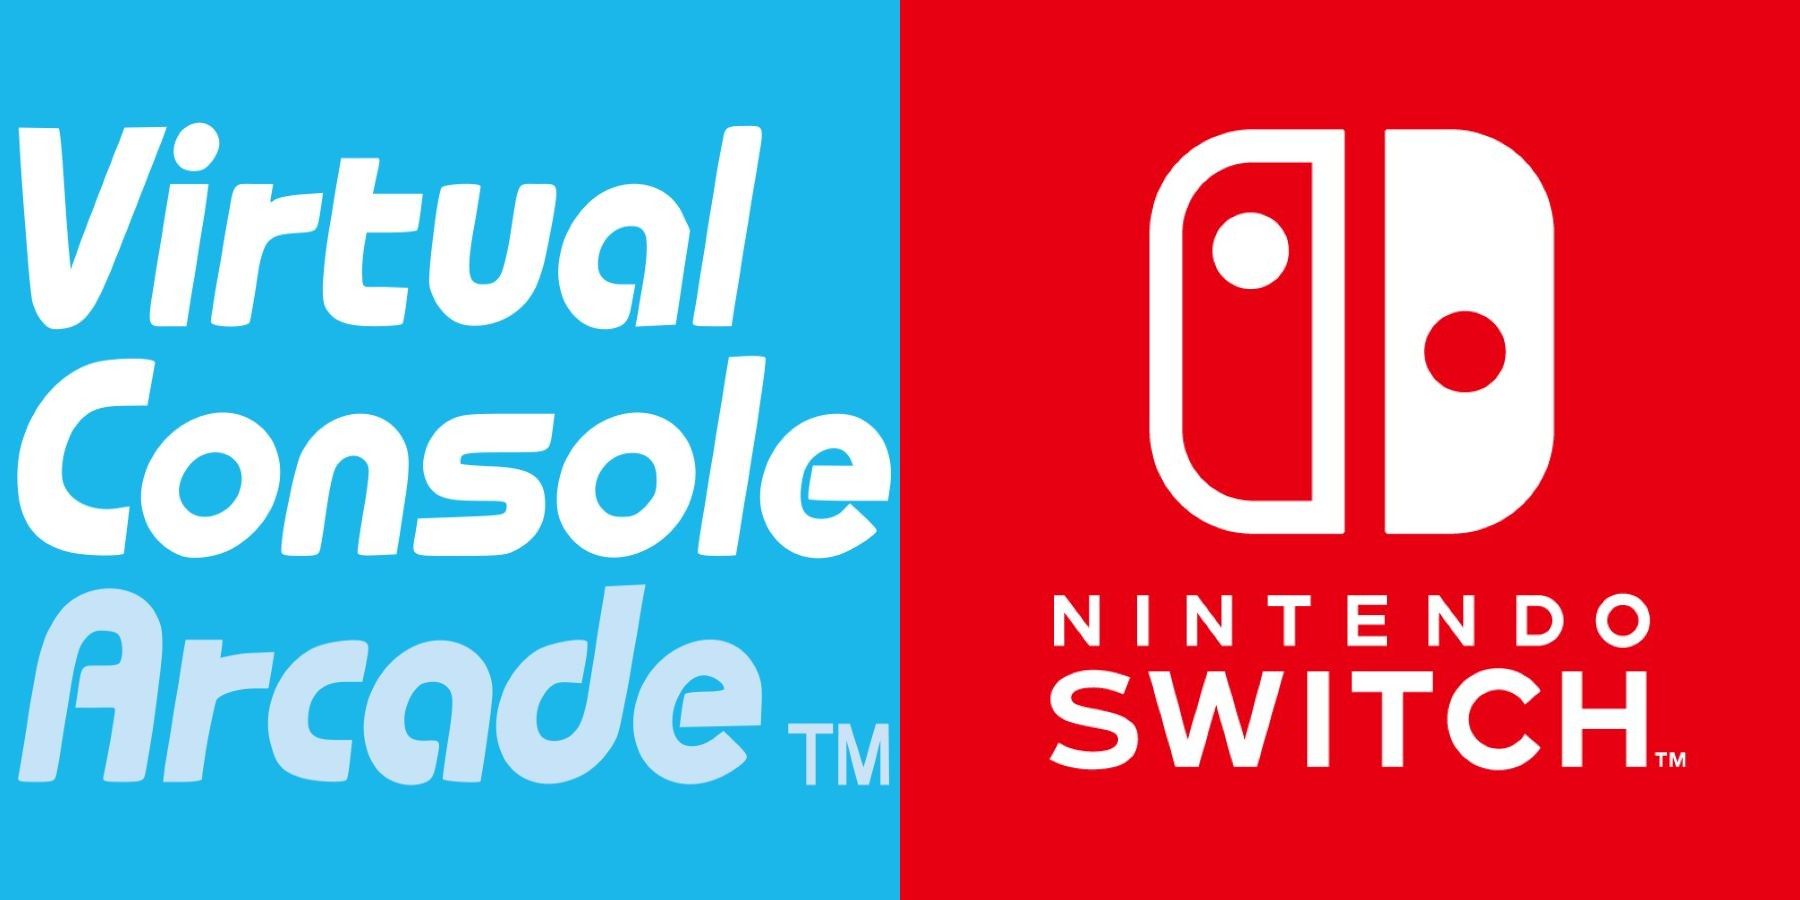 Virtual Console Arcade logo next to the Nintendo Switch logo